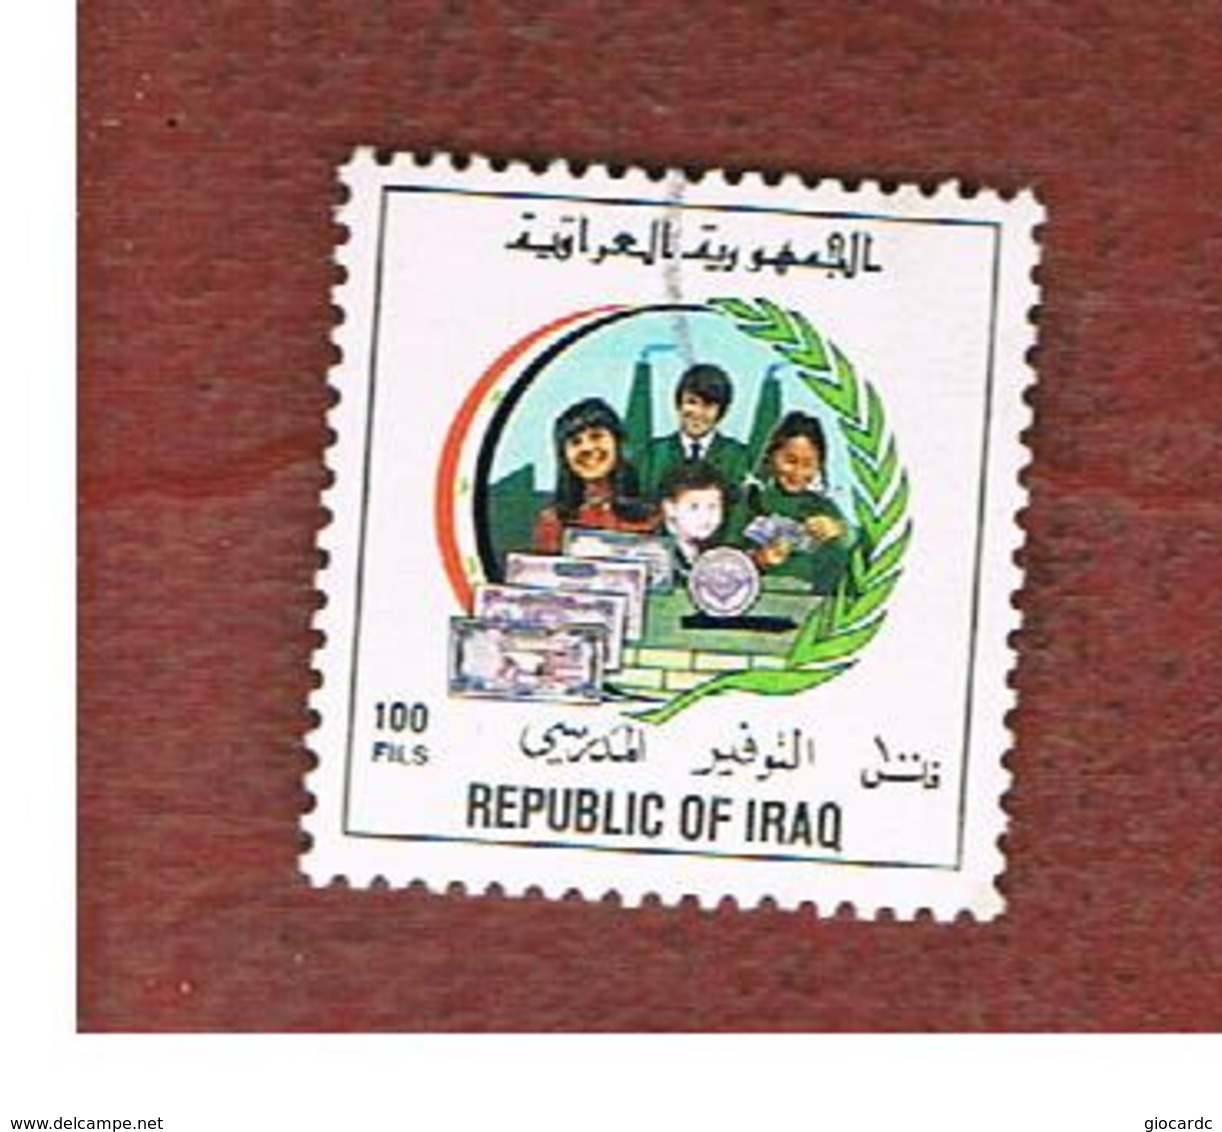 IRAQ    -  MI 1506 - 1993  POSTAL SAVINGS BANK 100  - USED ° - Iraq